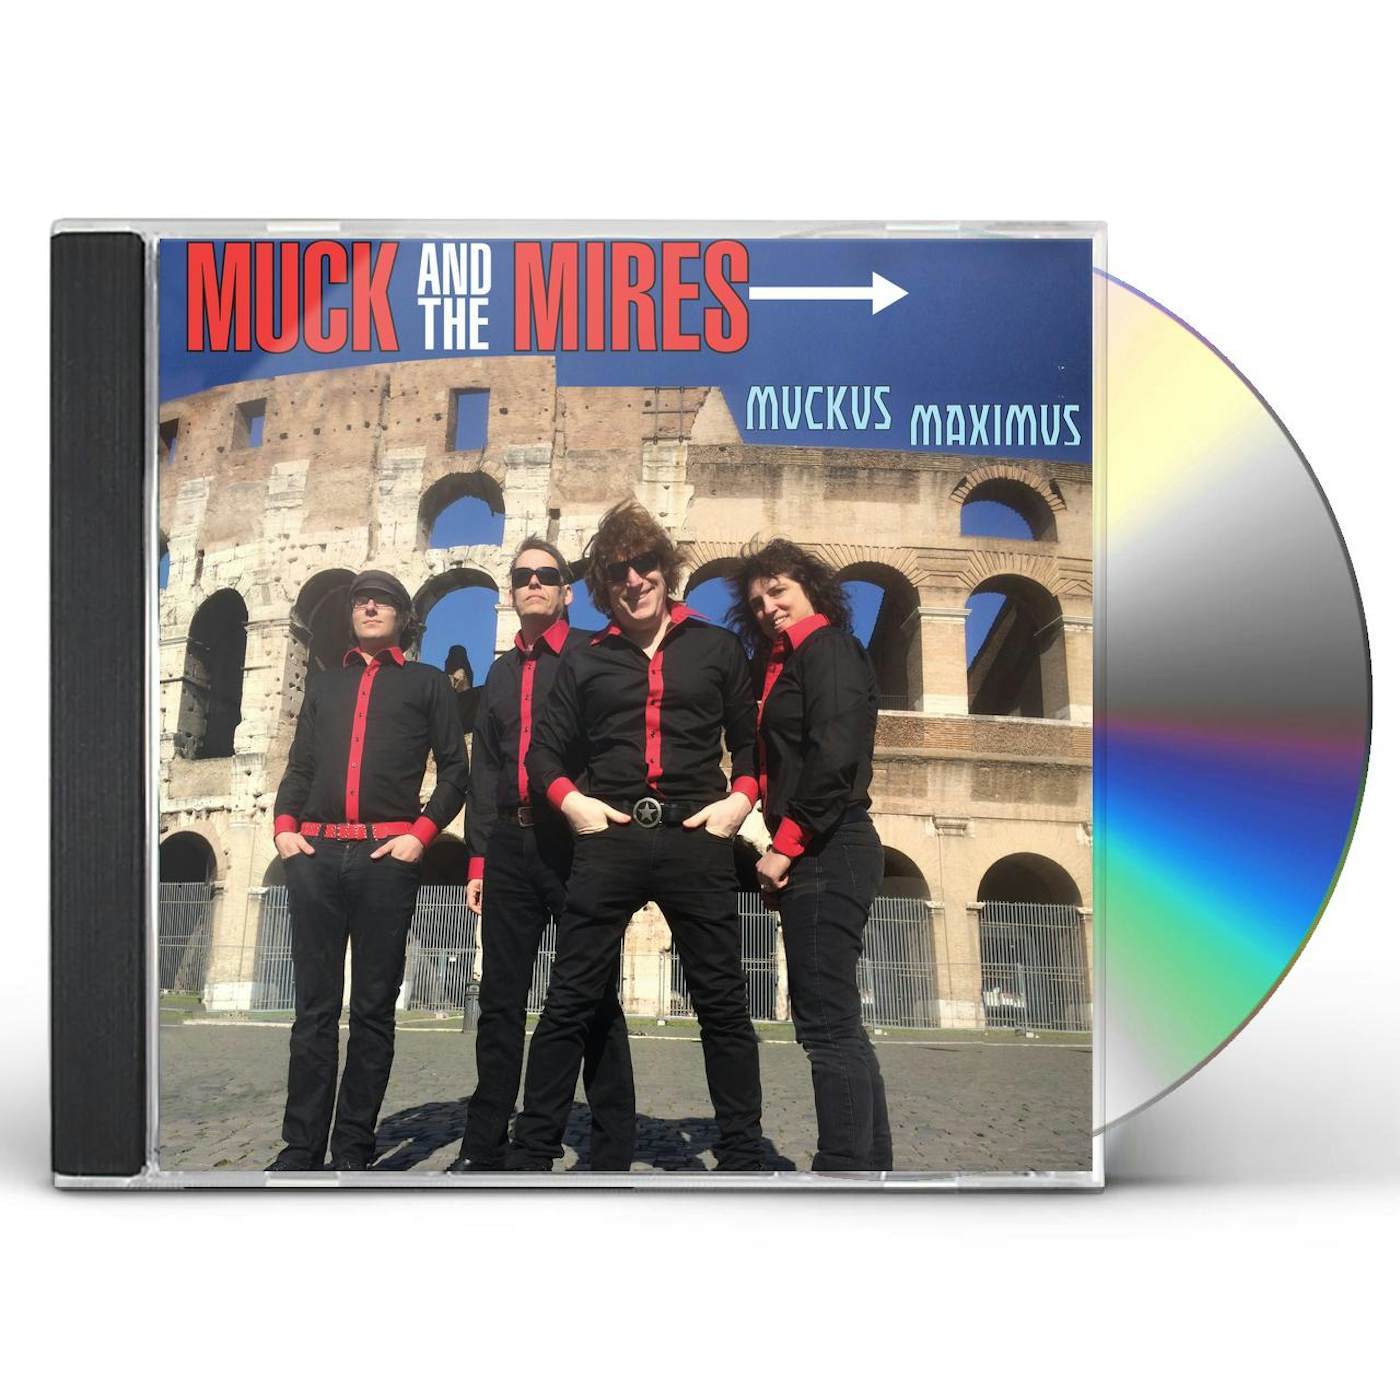 Muck & The Mires MUCKUS MAXIMUS CD